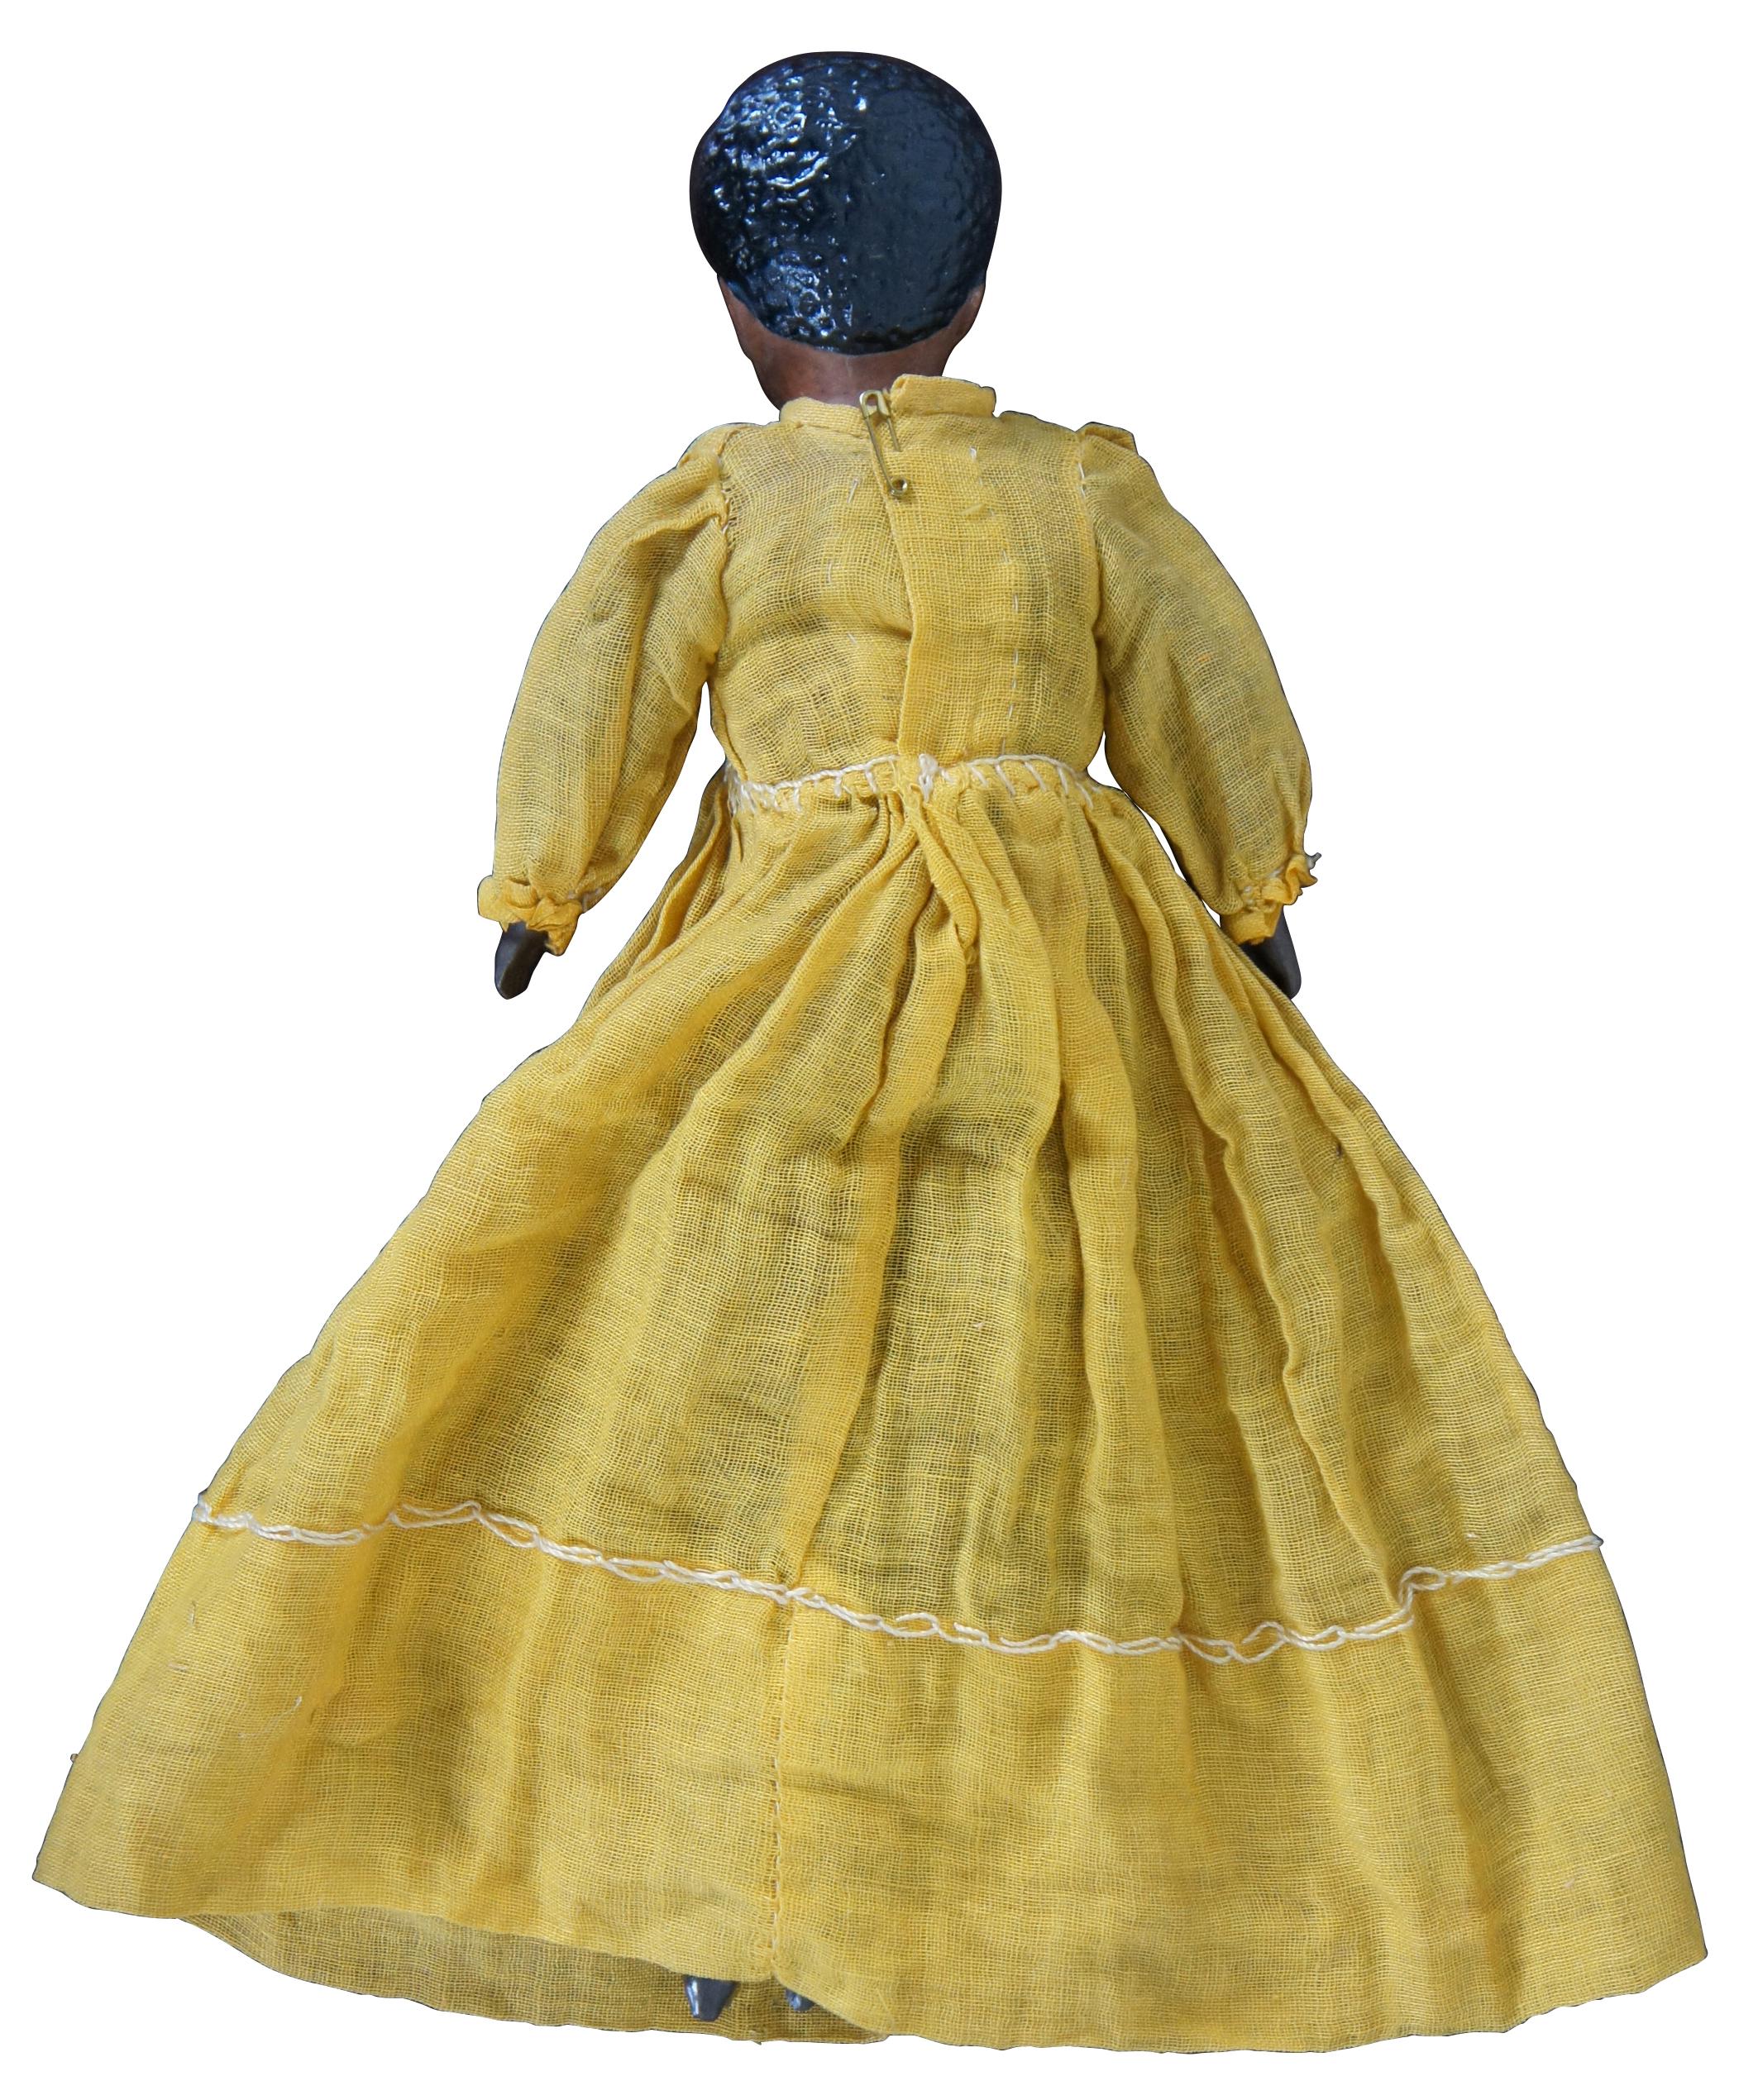 Einzigartige antike afroamerikanische Puppe (möglicherweise Mulatte?) aus dem 19. Jahrhundert mit Kopf und Händen aus Biskuit, geformten Stiefeln und Kurzhaarfrisur sowie einem Stoffkörper in einem gelben Kleid.